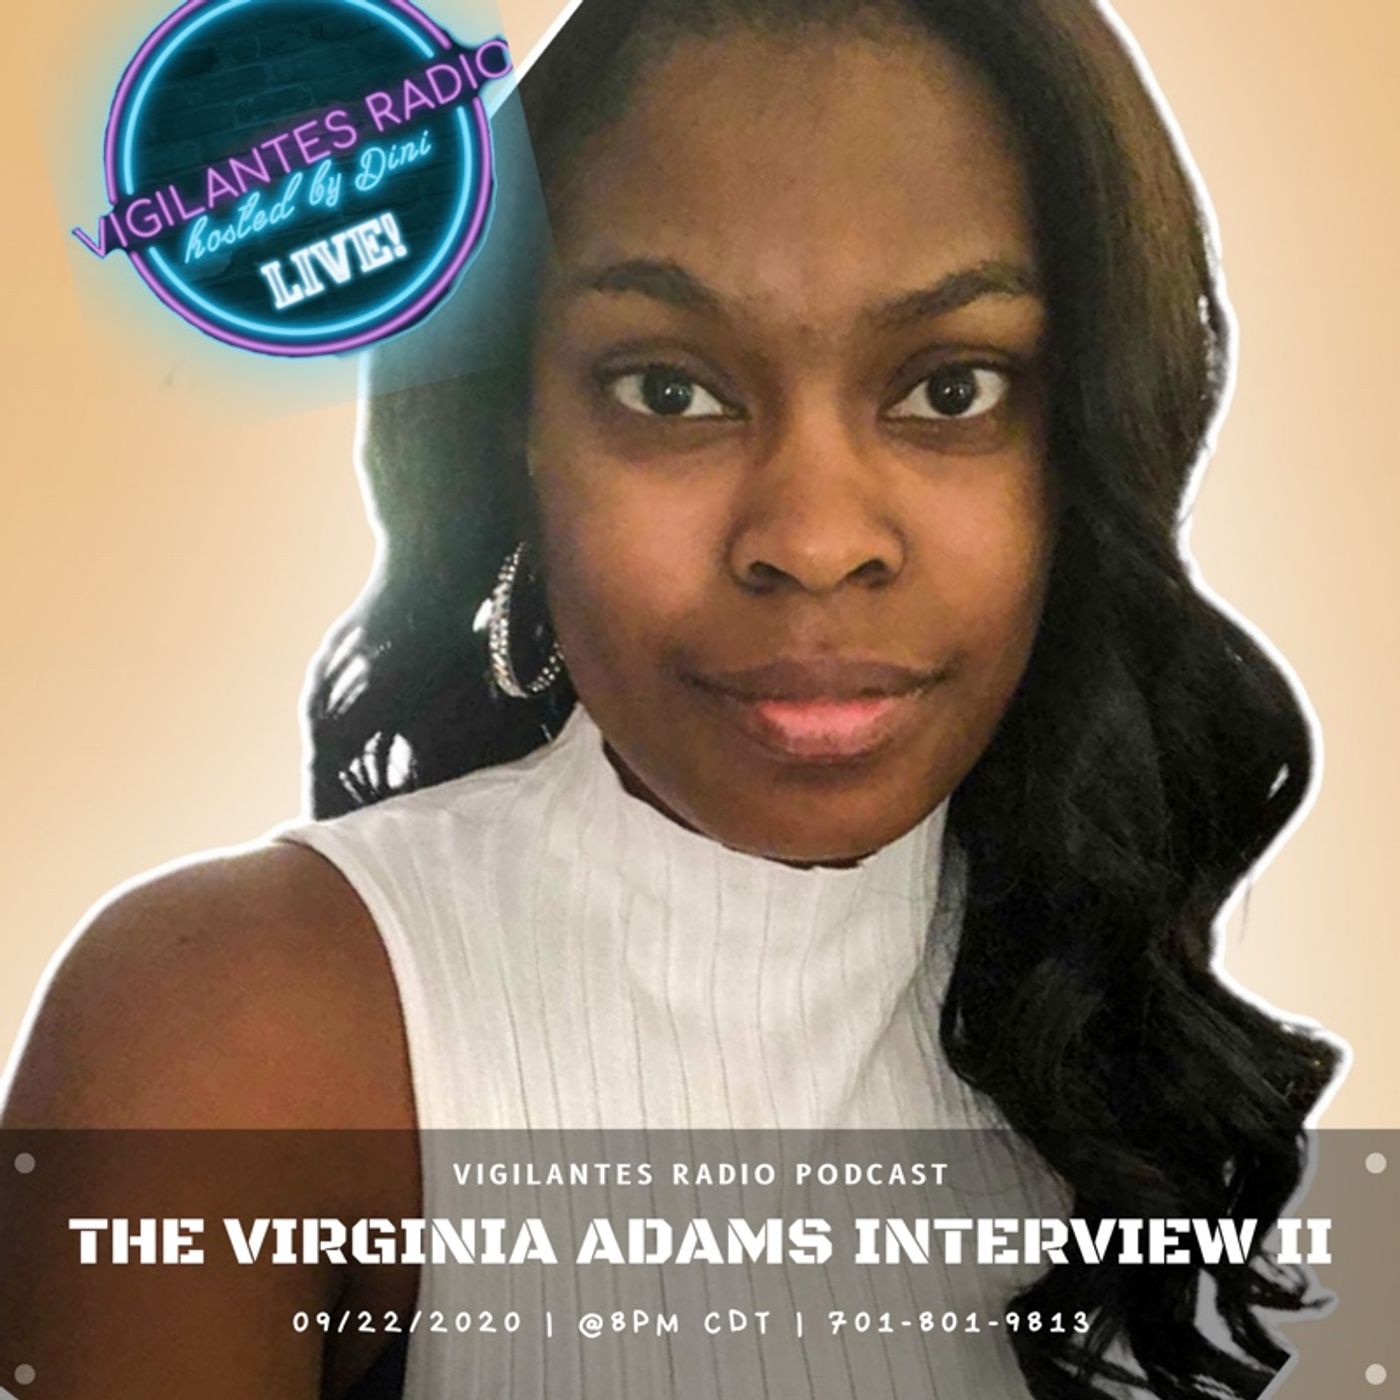 The Virginia Adams Interview II.